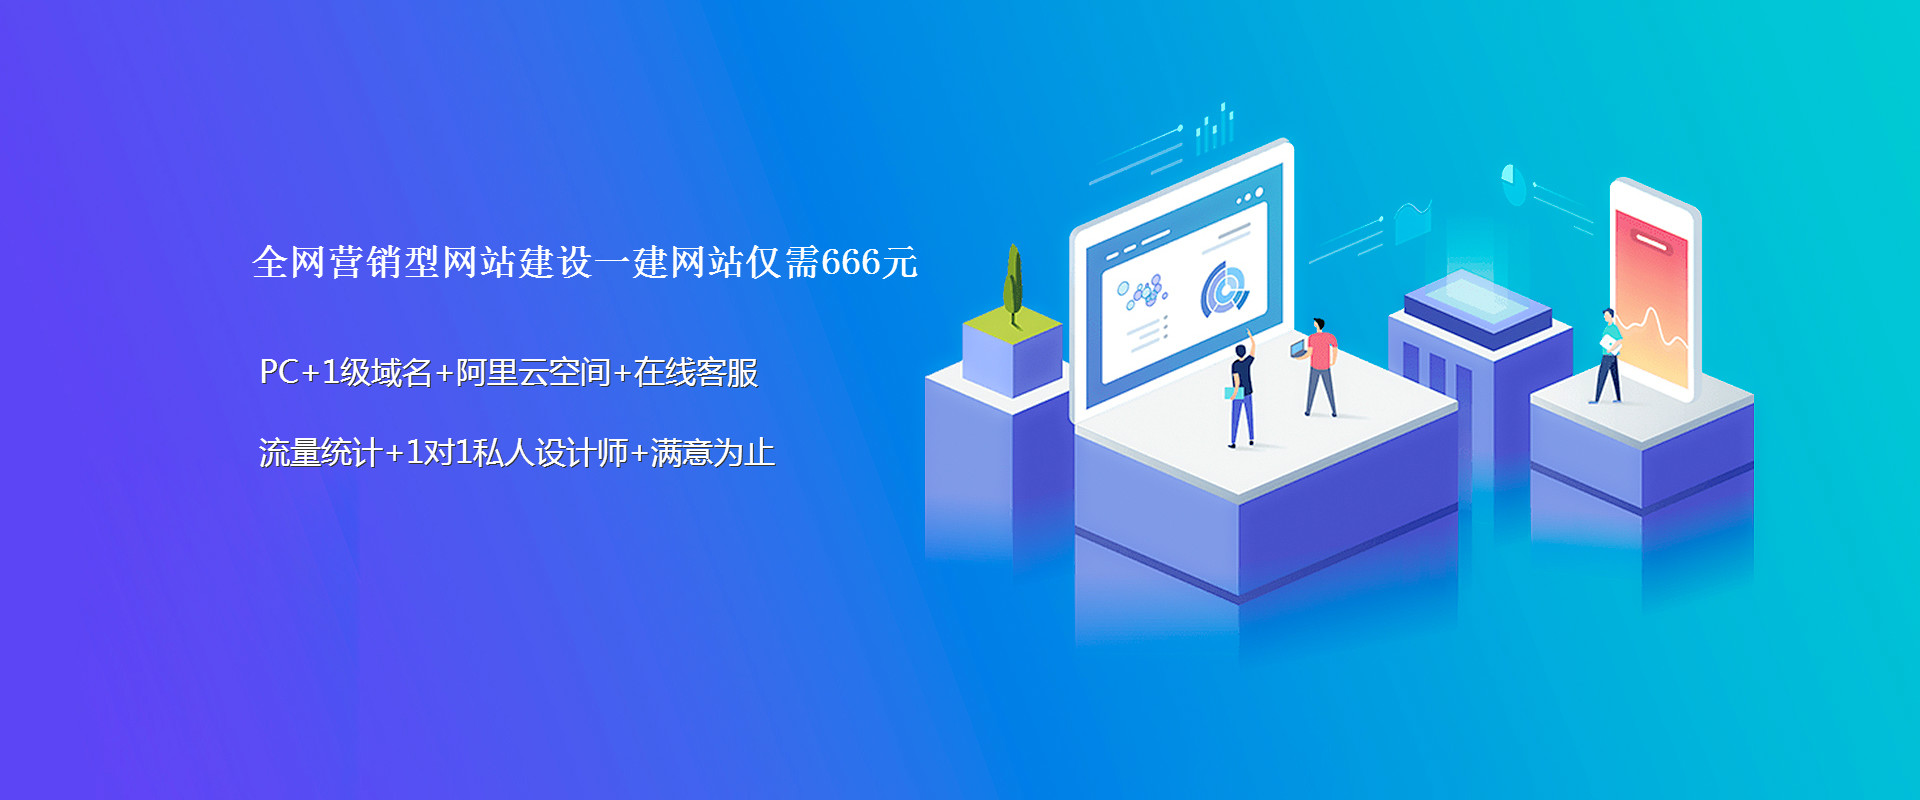 seo网站关键词排名提升 seo关键词优化技术